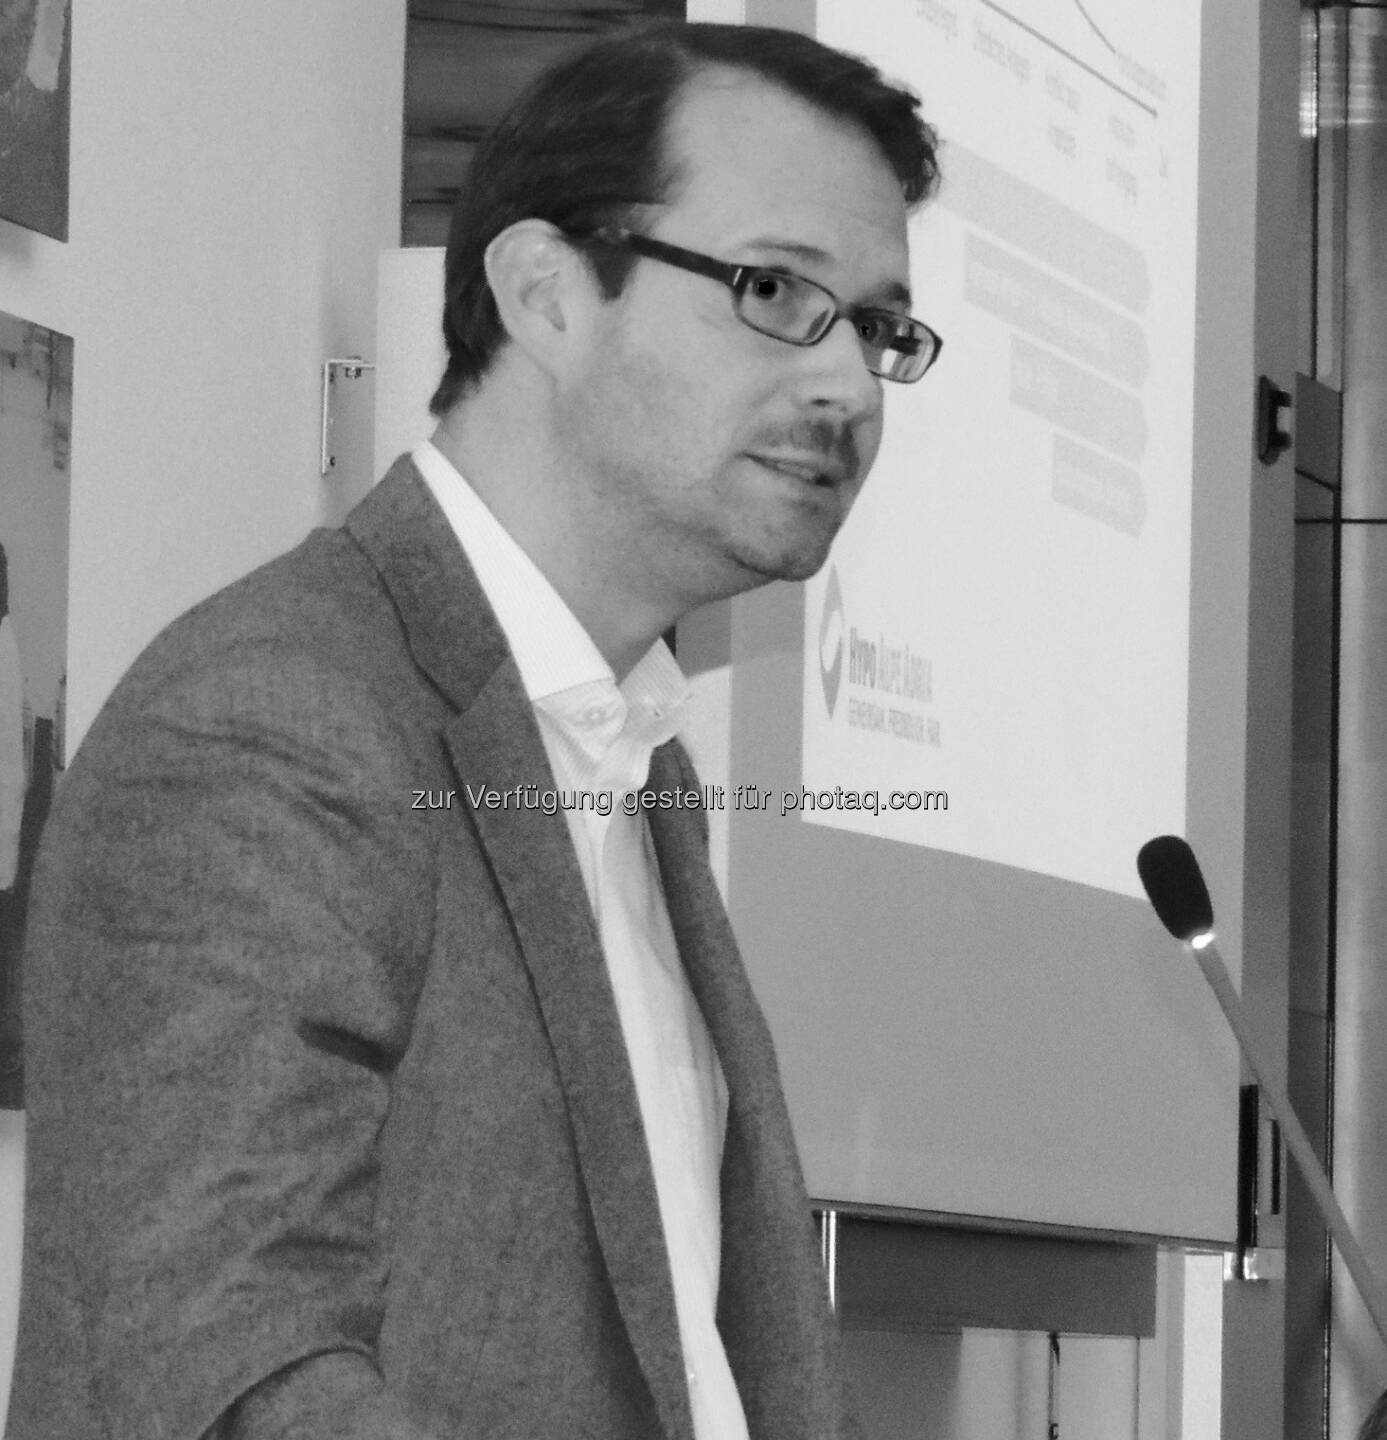 Nikola Donig, Konzernsprecher der Hypo Alpe Adria Bank International, erzählt über 4 Jahre mediales Dauerfeuer